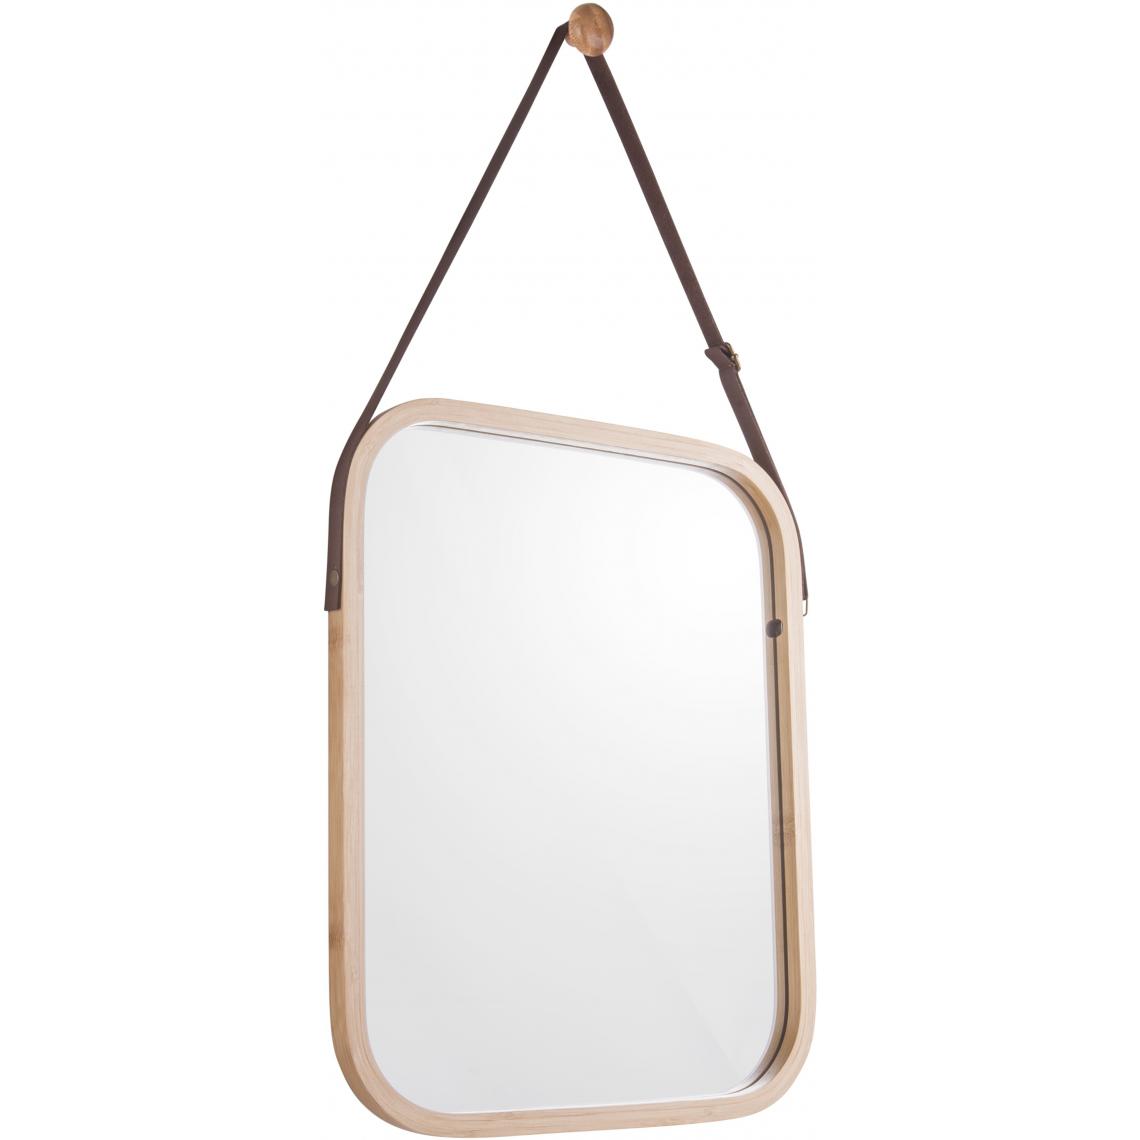 Pt Living - Miroir carré en bambou à suspendre Idyllic - Miroirs